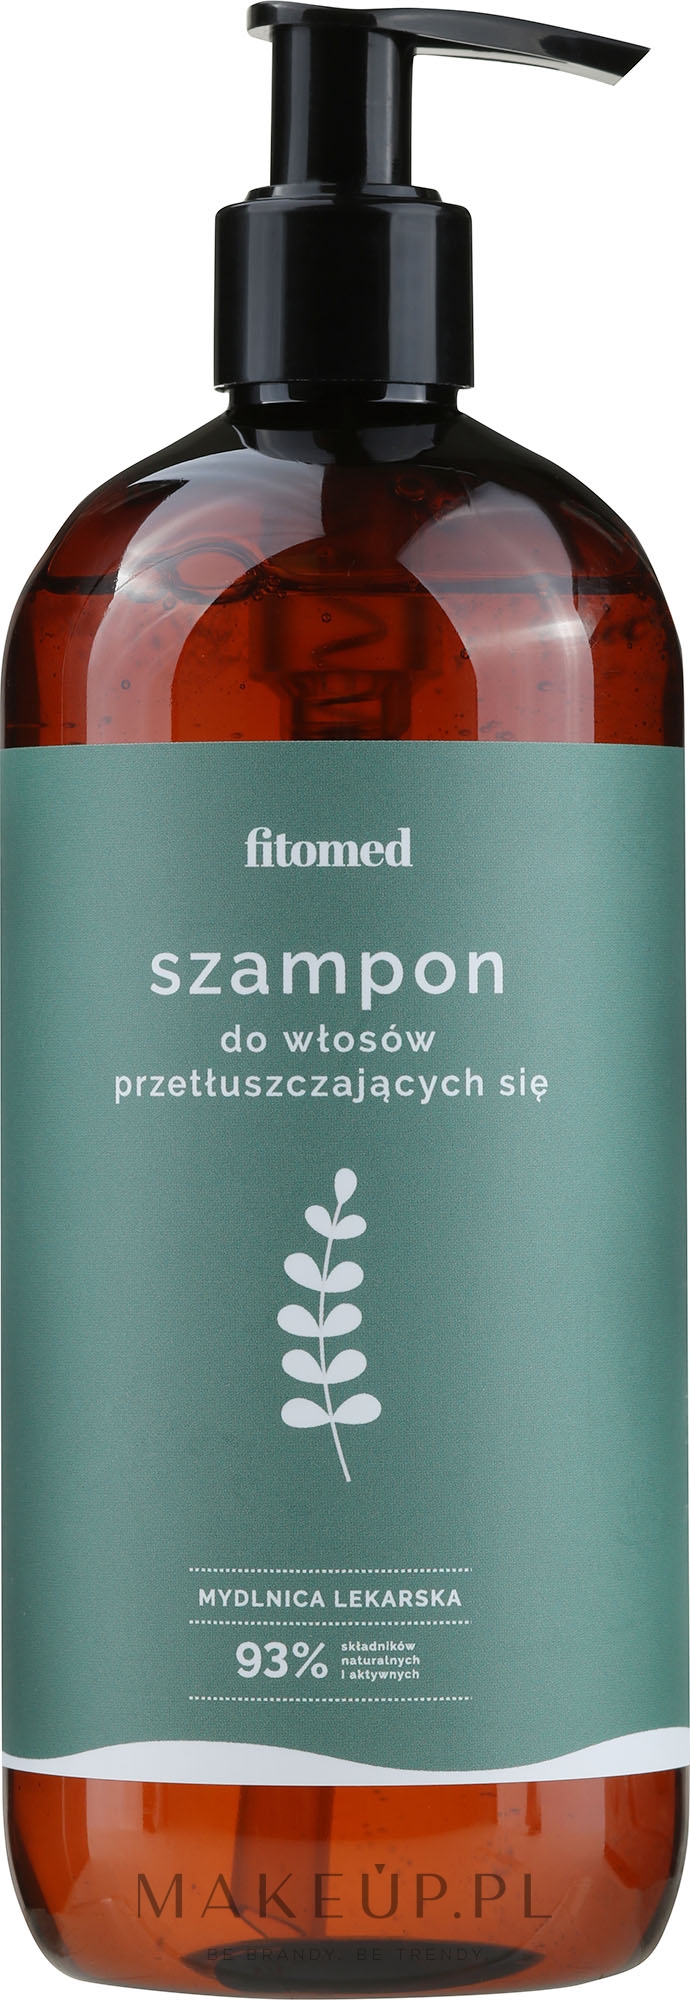 fitomed szampon do włosów przetłuszczających się wizaz